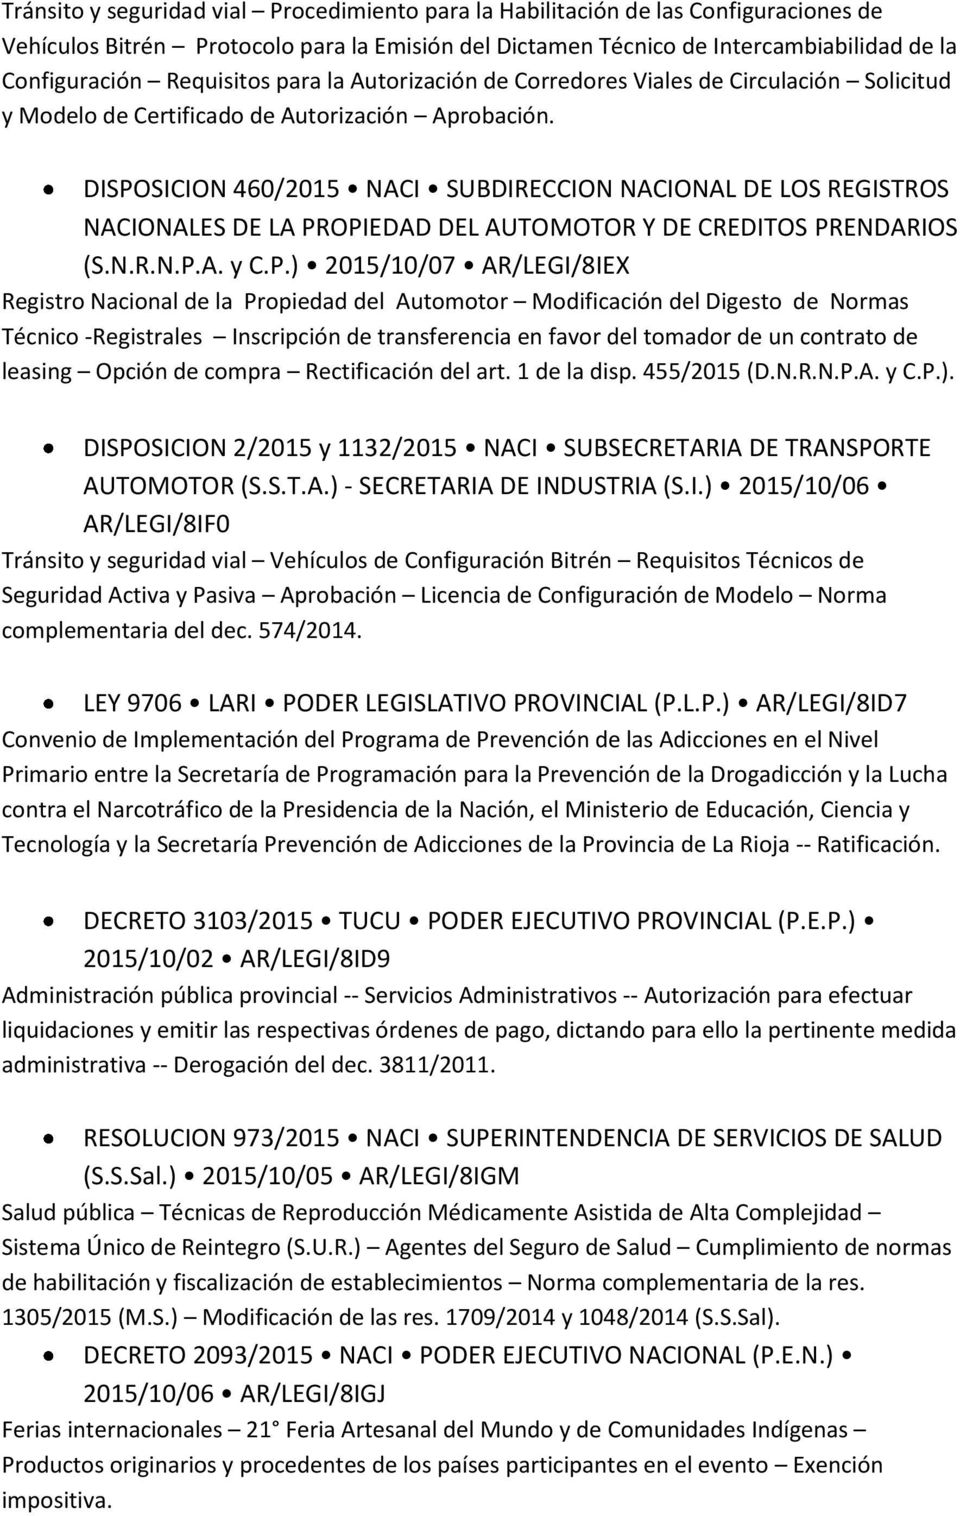 DISPOSICION 460/2015 NACI SUBDIRECCION NACIONAL DE LOS REGISTROS NACIONALES DE LA PROPIEDAD DEL AUTOMOTOR Y DE CREDITOS PRENDARIOS (S.N.R.N.P.A. y C.P.) 2015/10/07 AR/LEGI/8IEX Registro Nacional de